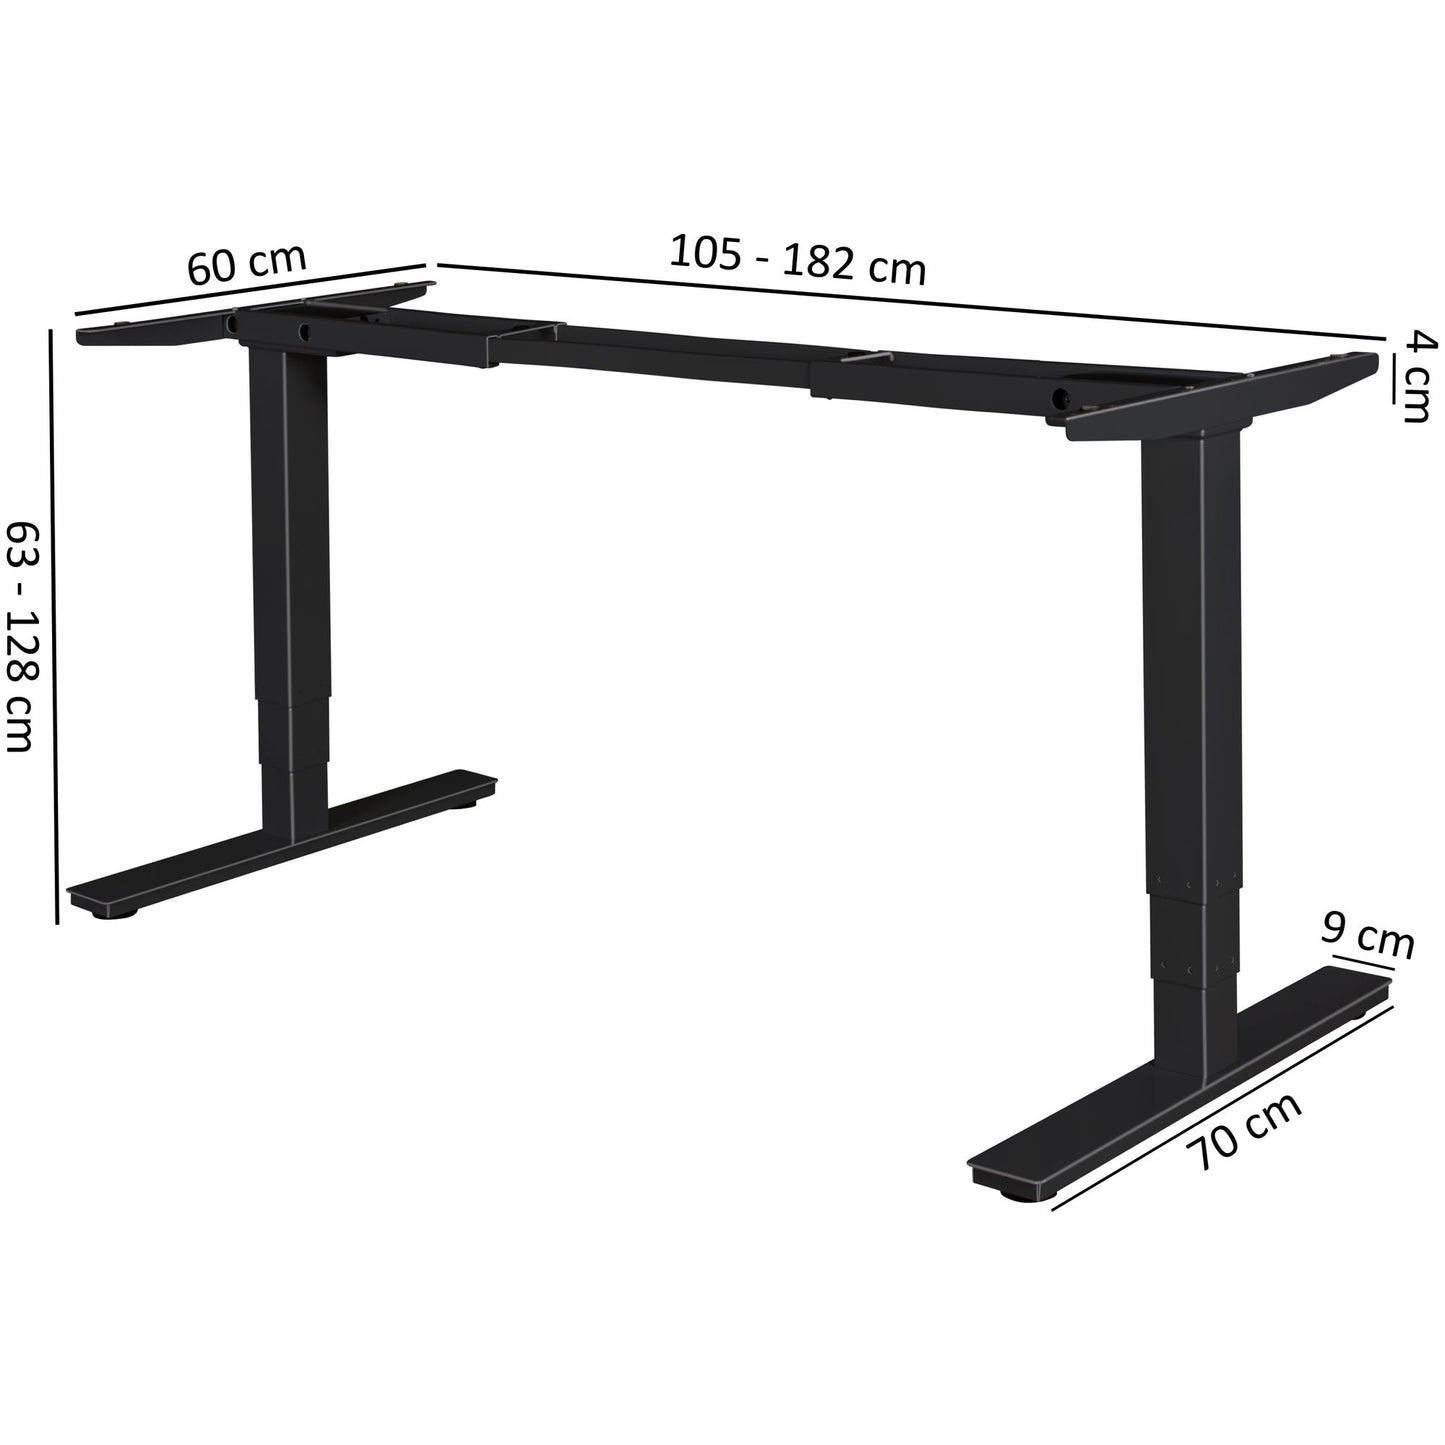 Base de table réglable électriquement de Nancy - Cadre de table - Base de table avec fonction mémoire - Affichage LED